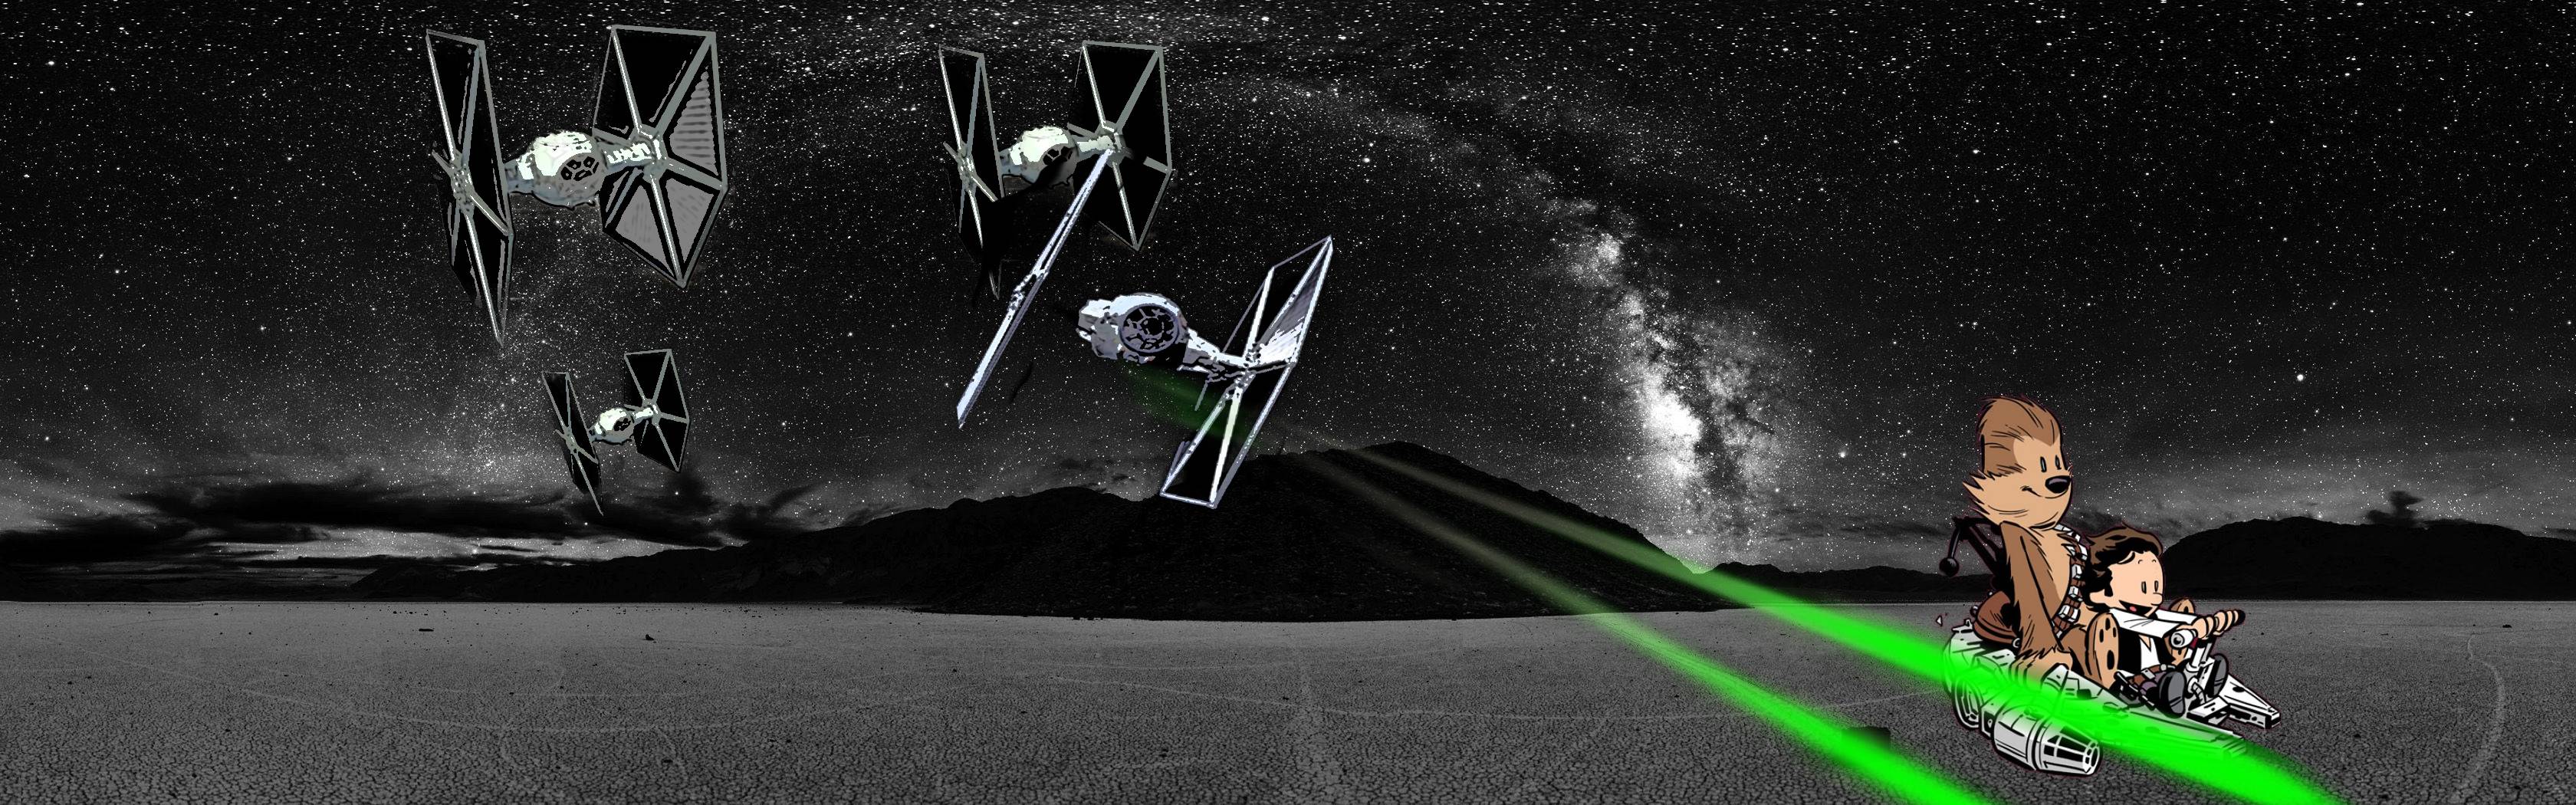 fondo de pantalla dual de star wars,espacio,atmósfera,en blanco y negro,noche,espacio exterior